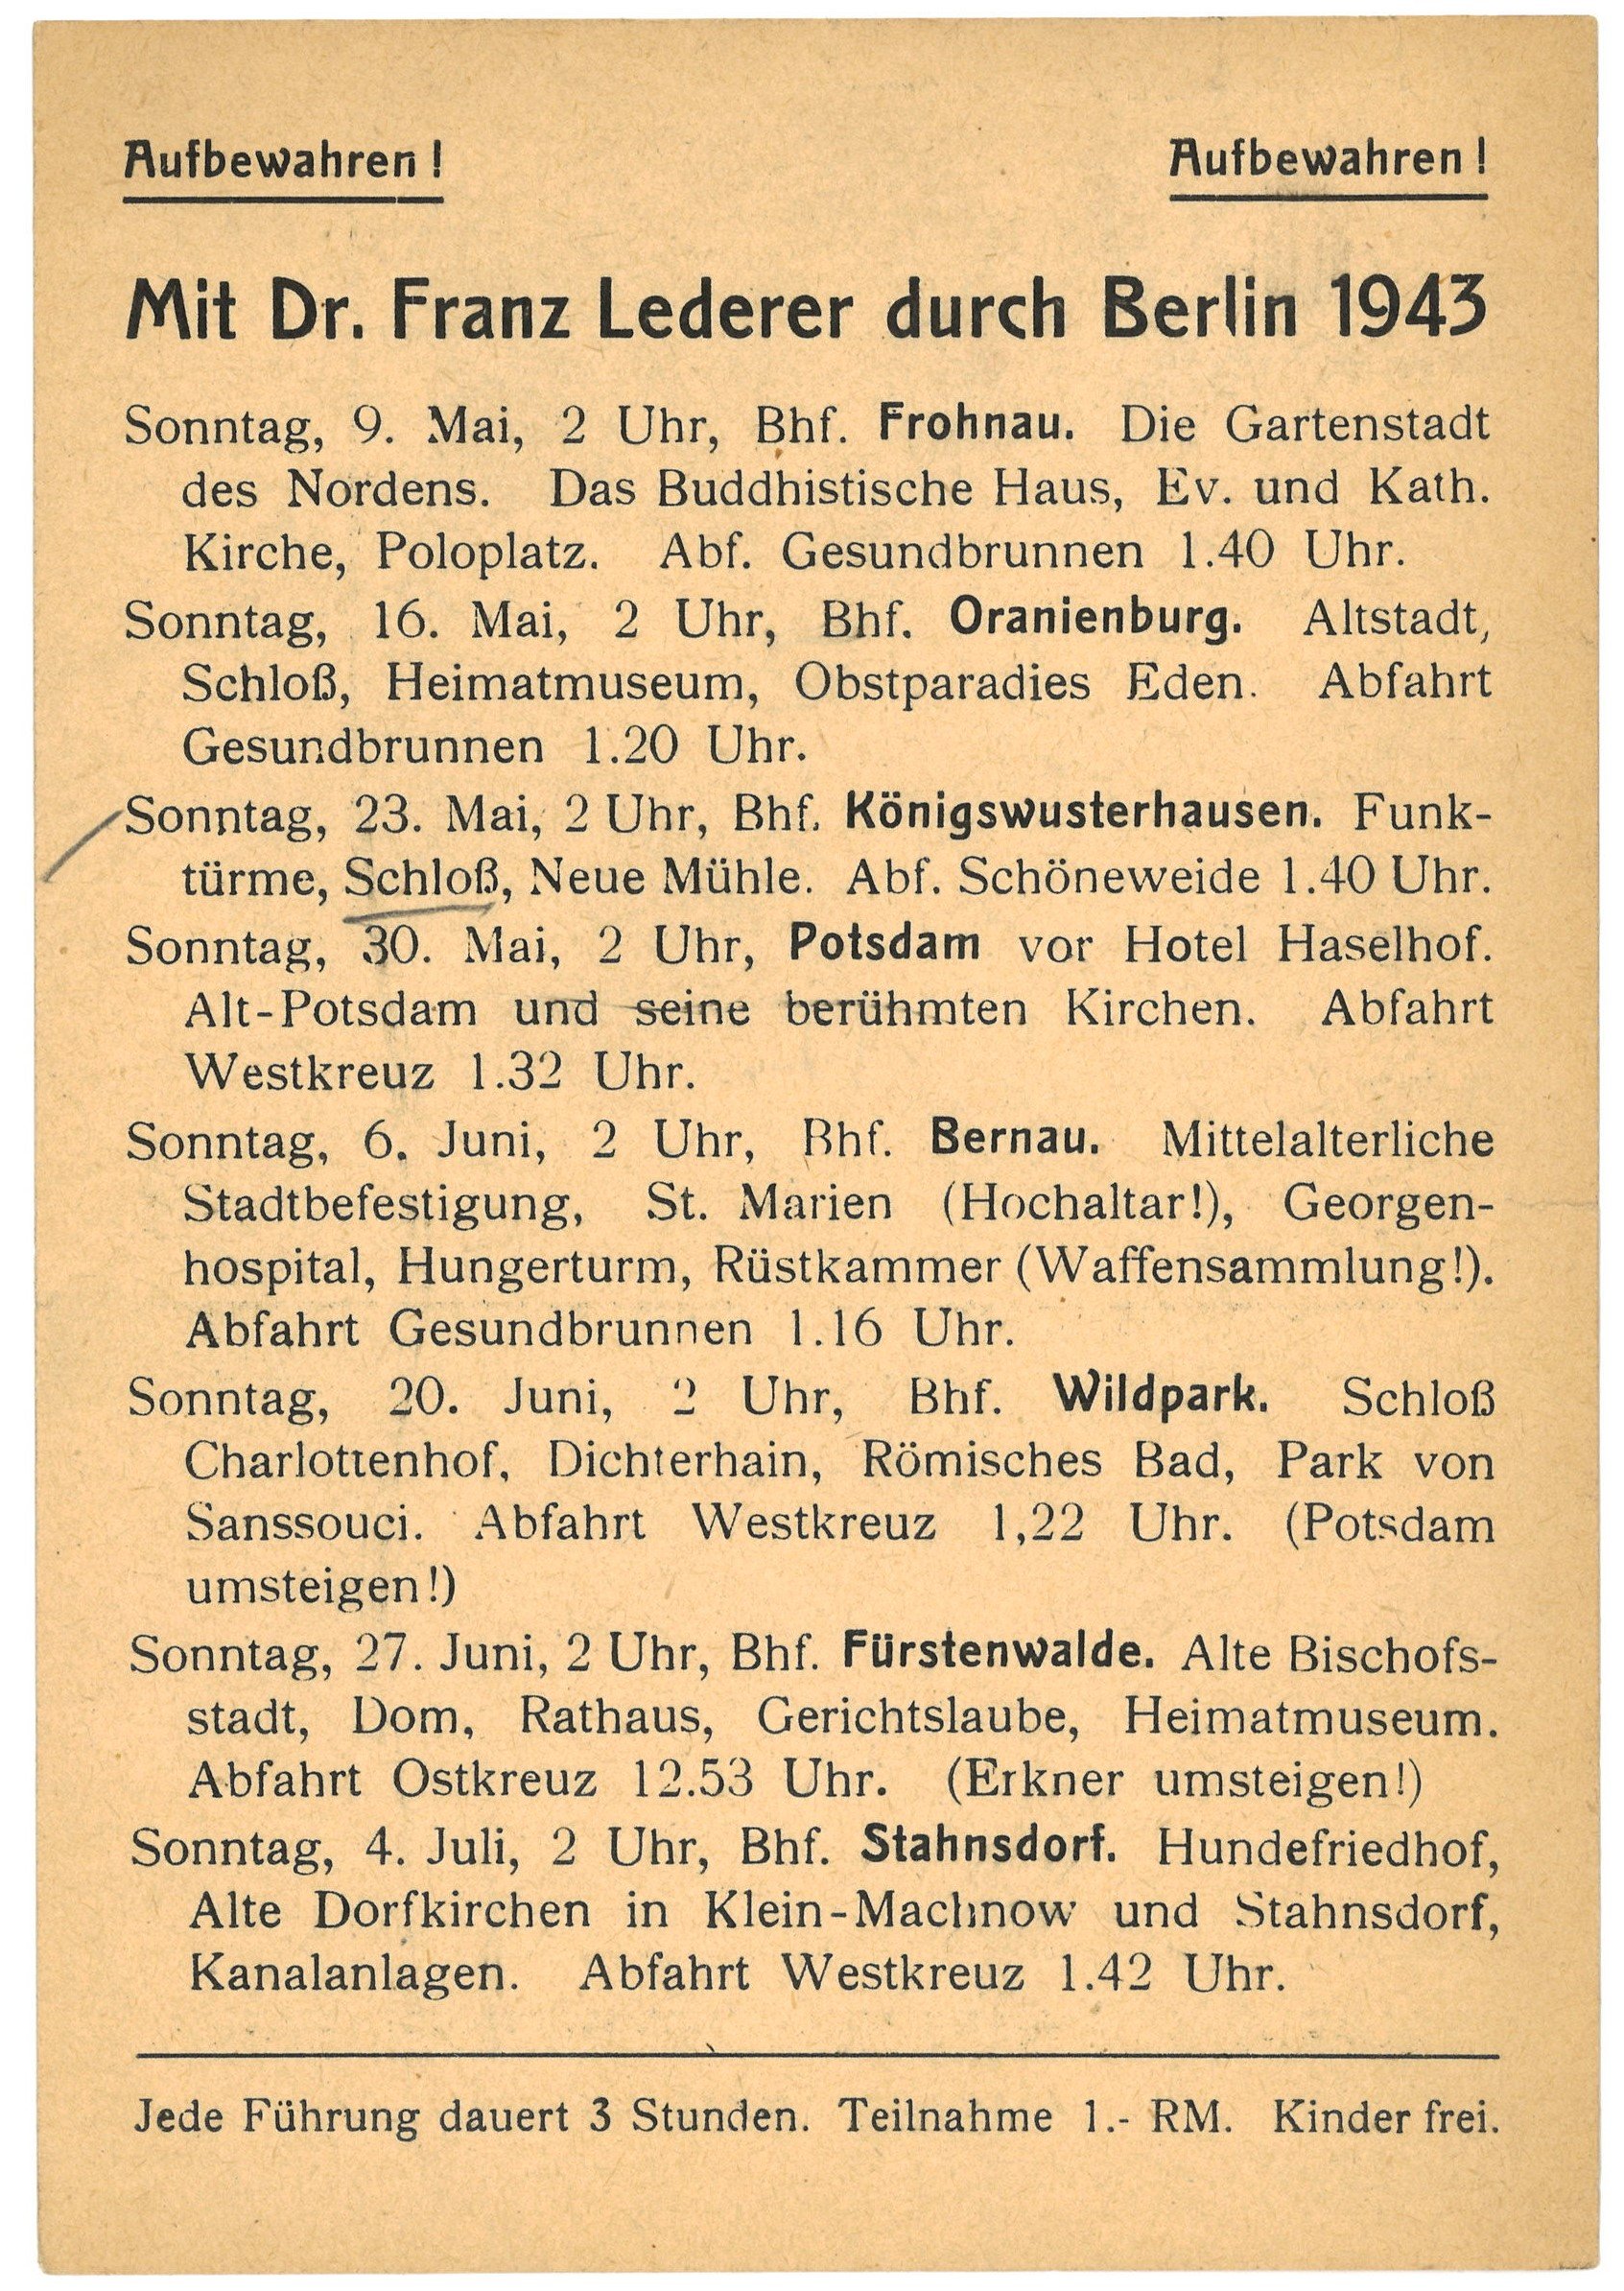 Programm der Berlin- und Brandenburg-Führungen von Dr. Franz Lederer für Mai bis Juli 1943 (Landesgeschichtliche Vereinigung für die Mark Brandenburg e.V., Archiv CC BY)